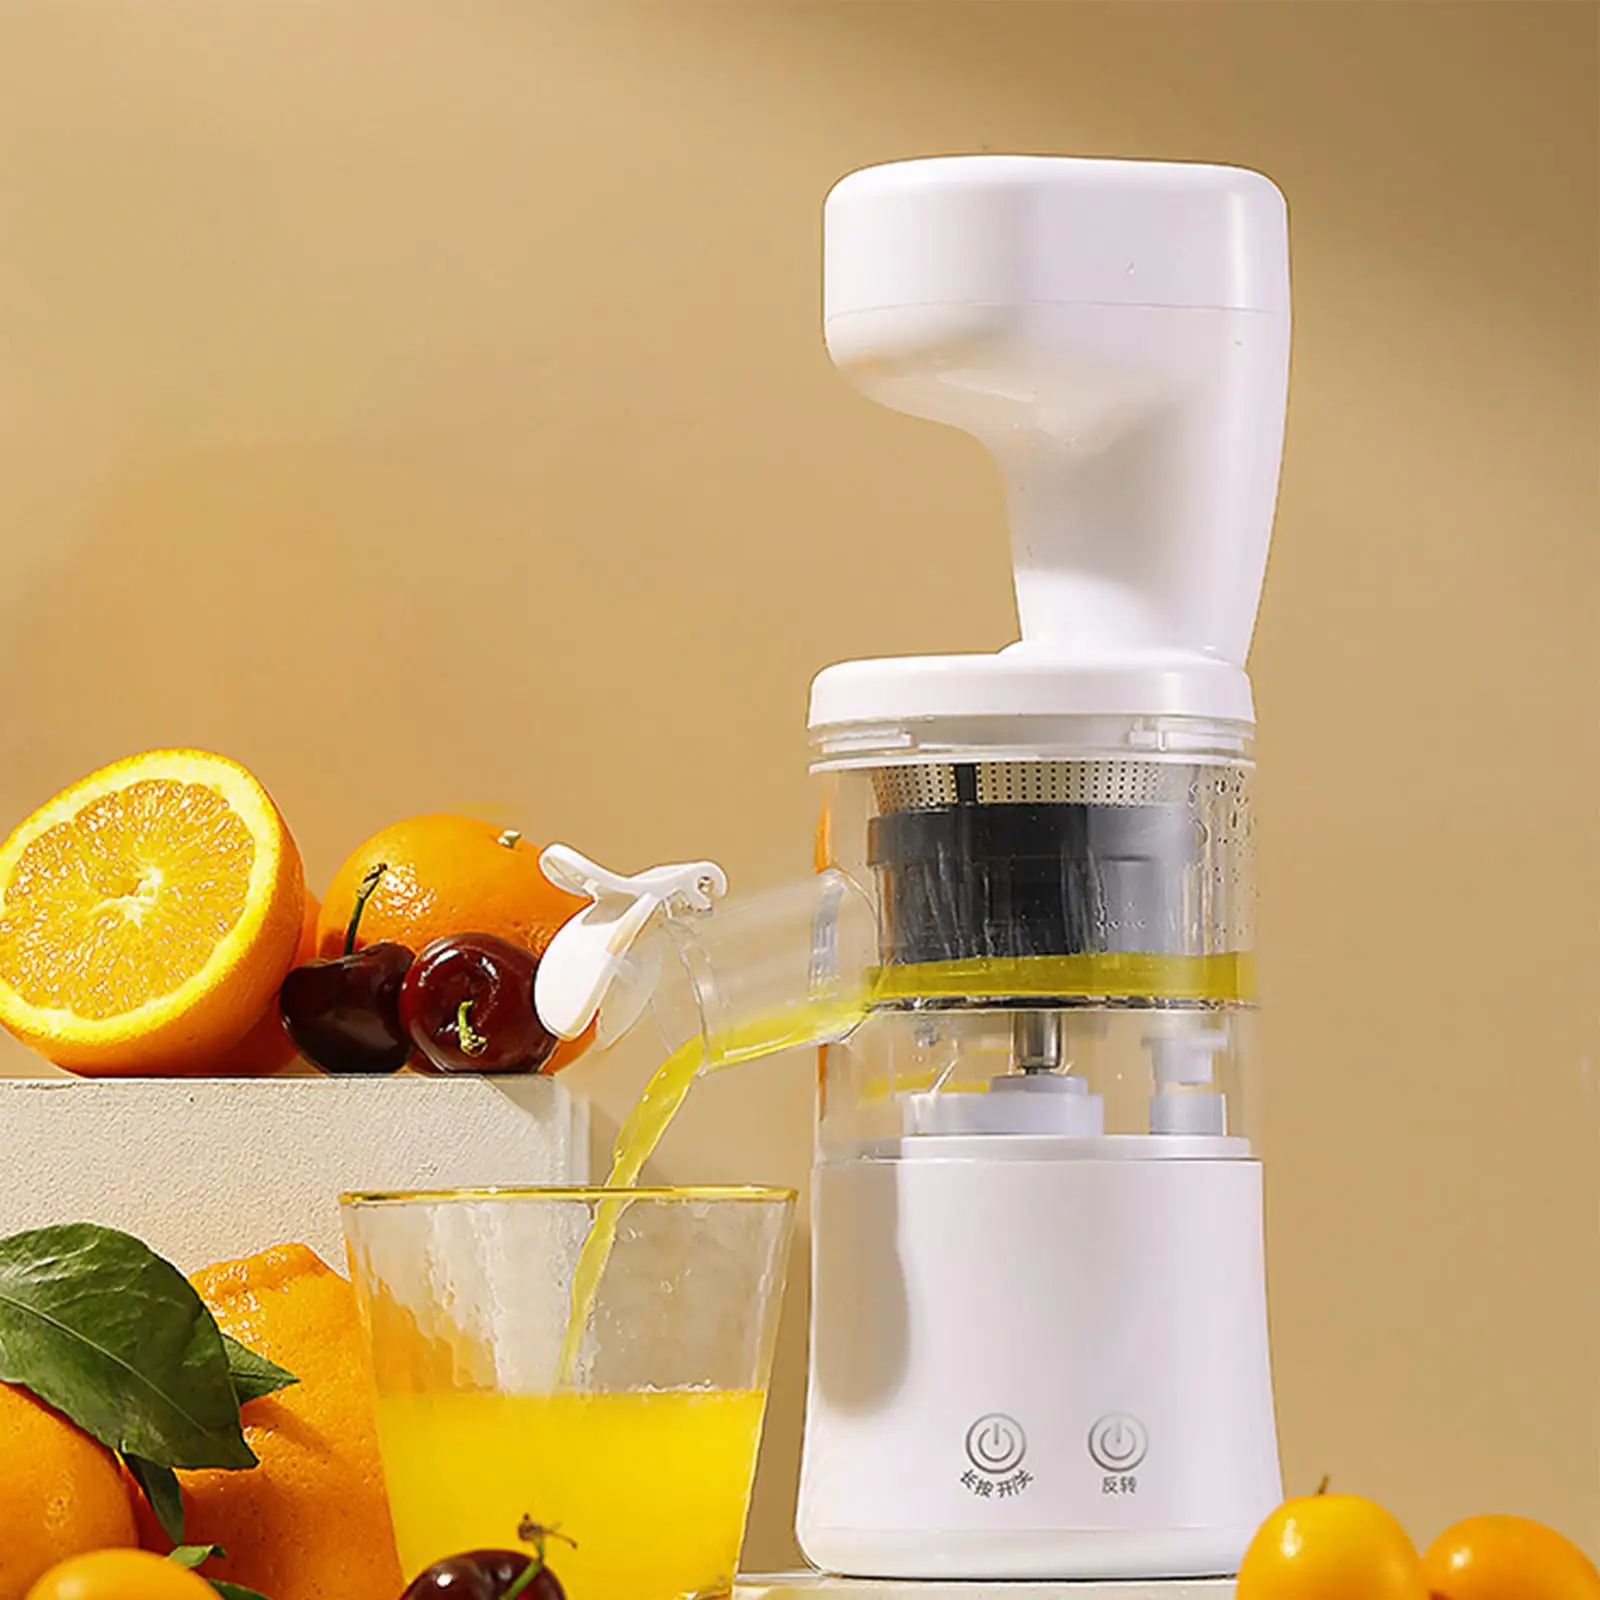 Household Mini Travel Blender Juicer Cup BPA Free USB Electric Smoothie Blender Maker Fruit Juicer Cup for Office Home